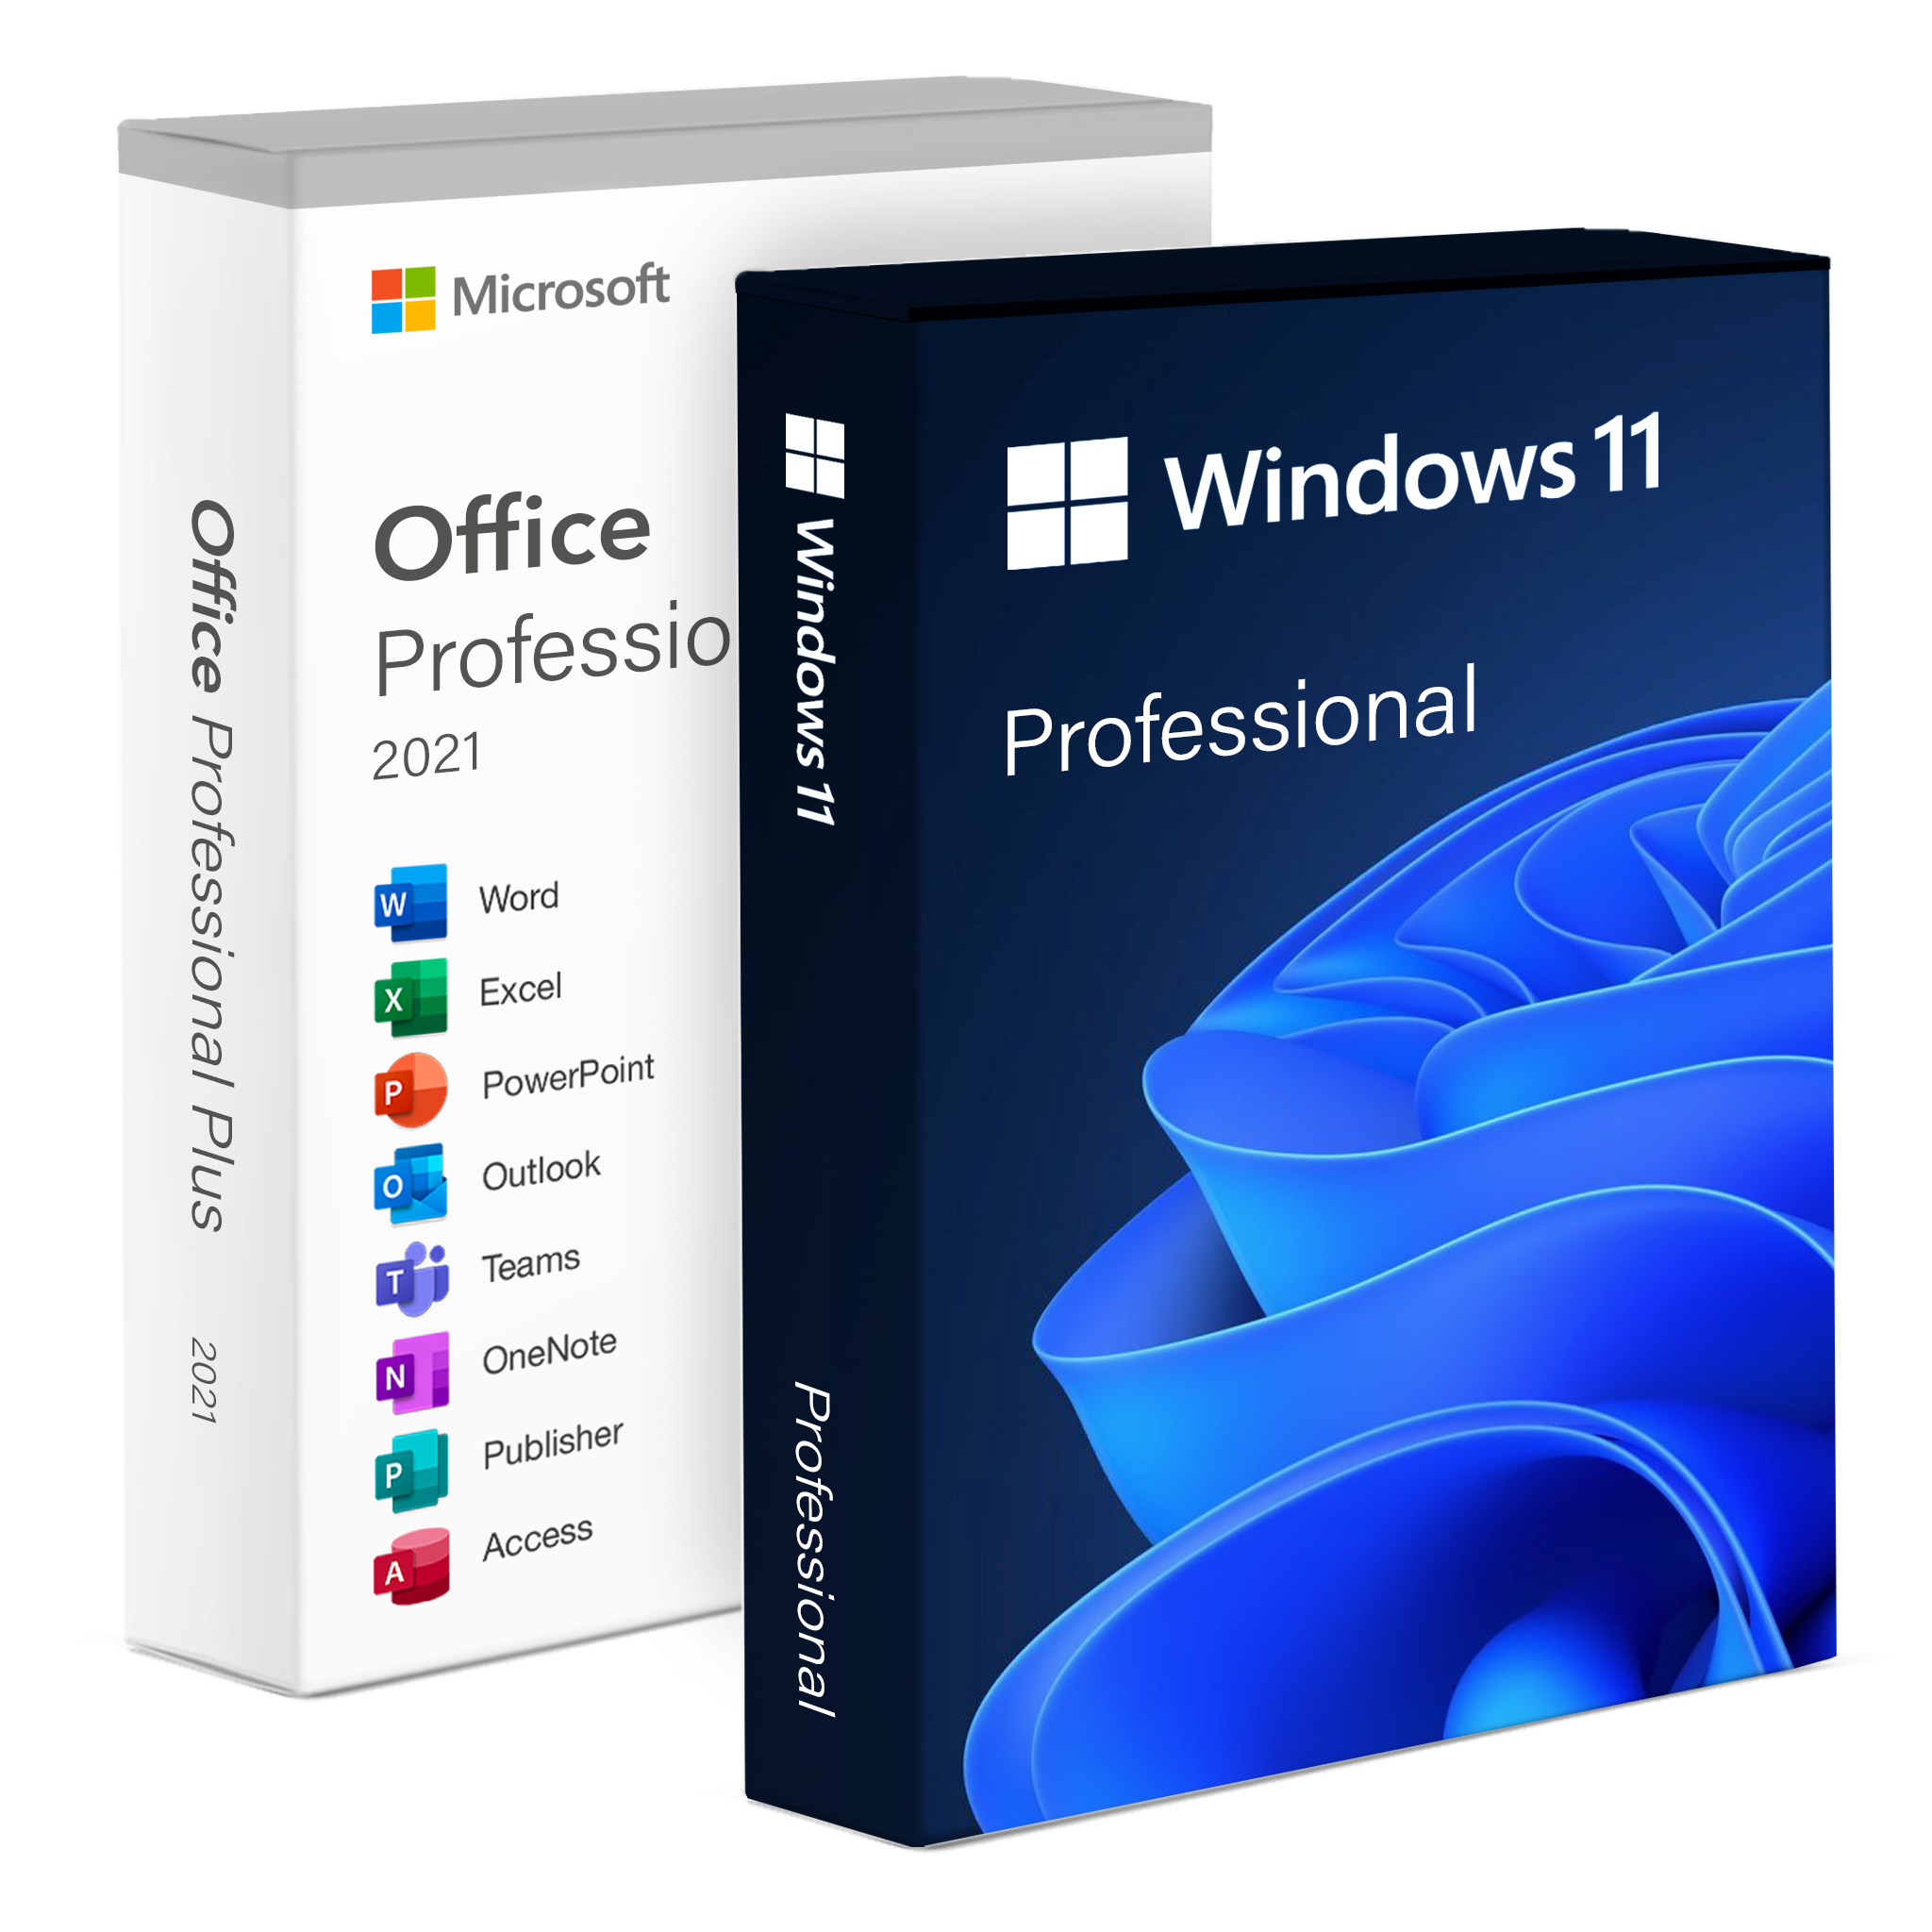 Microsoft Office 2021 Pro Plus + Windows 11 Pro